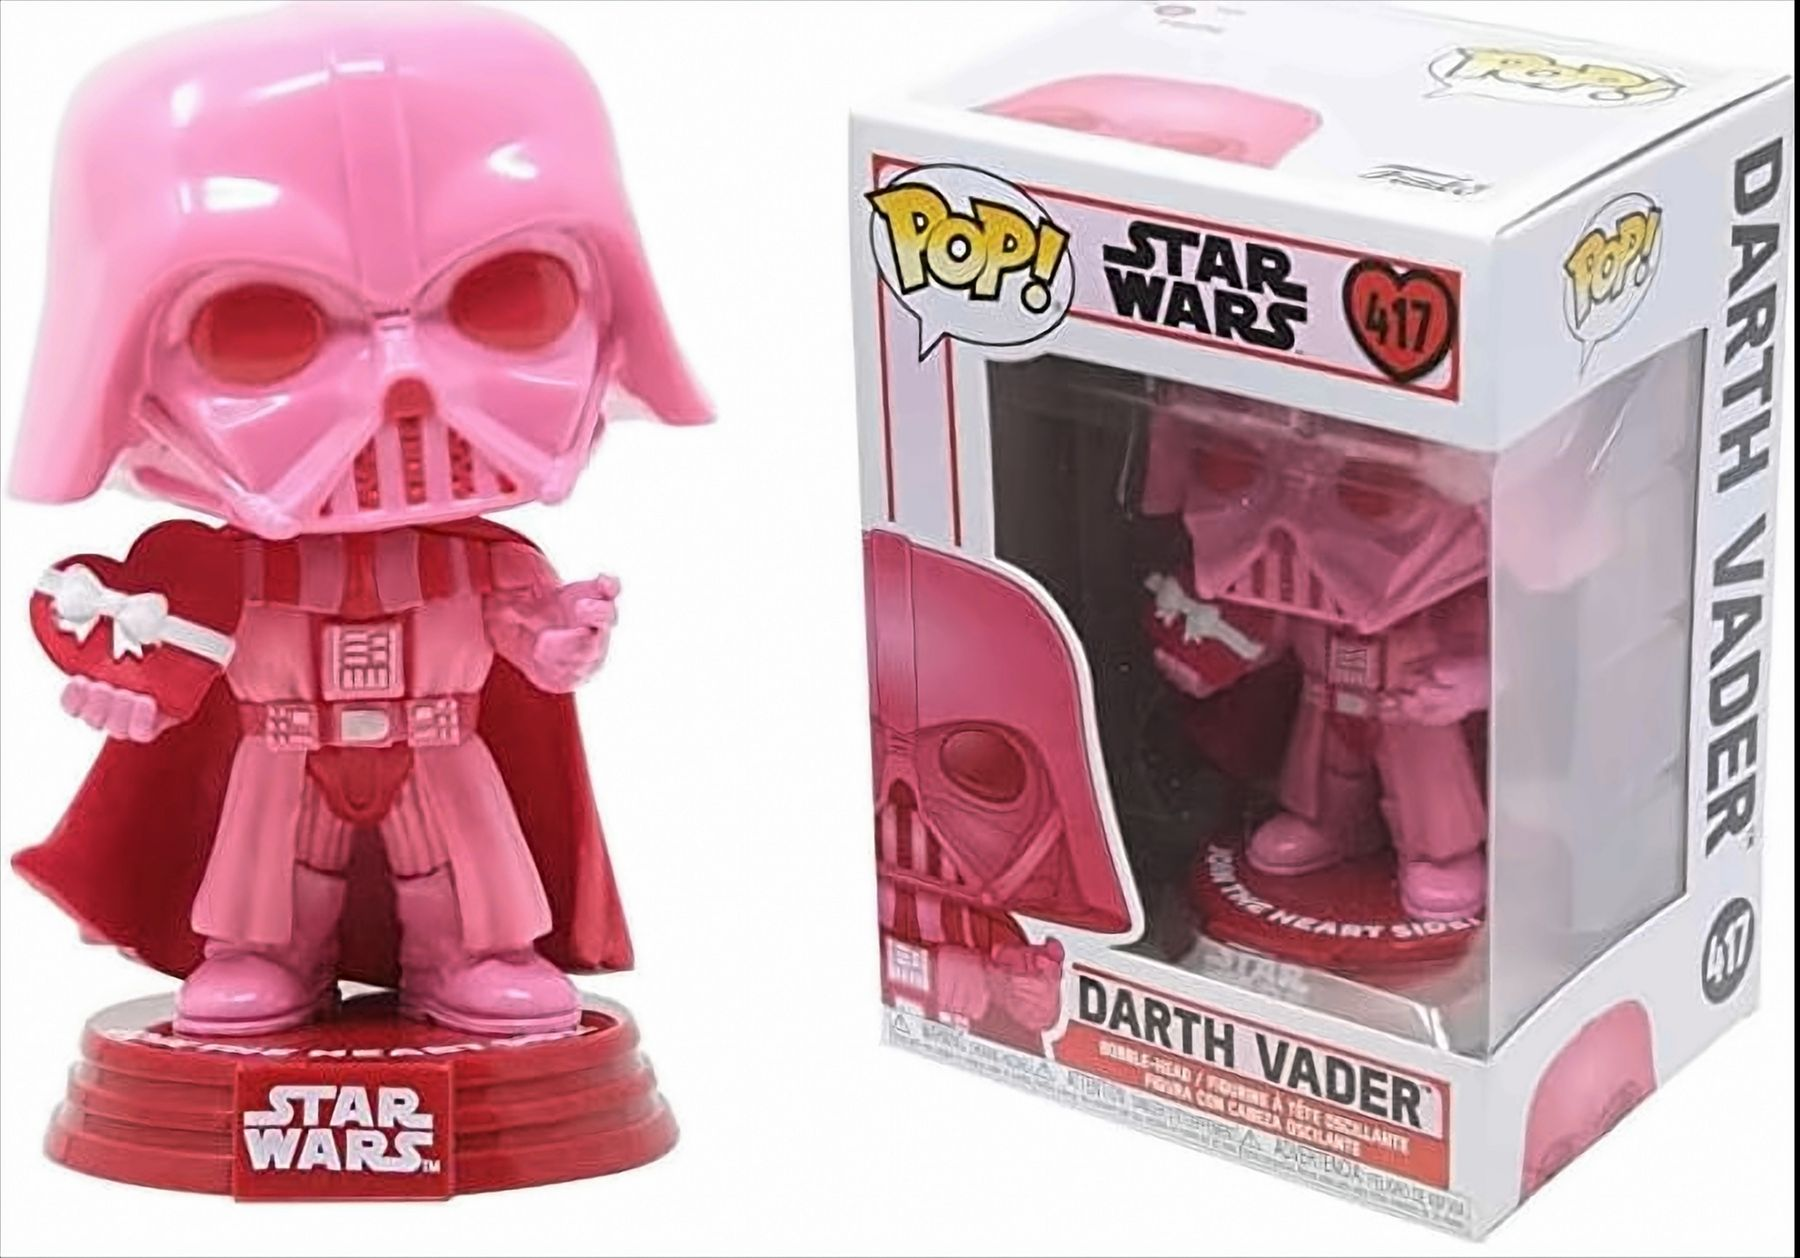 Wars: Darth Star Vader Valentines